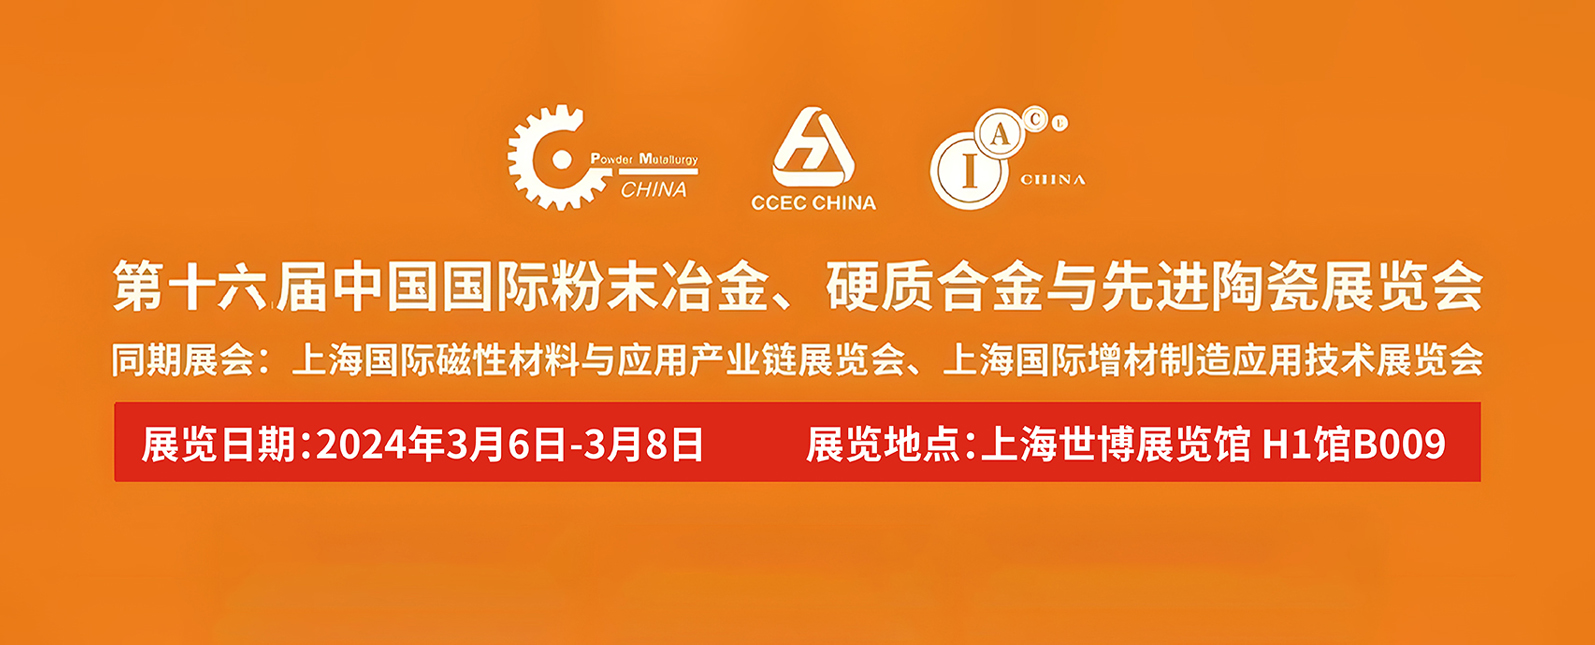 开幕在即！诚邀您共聚第16届中国国际粉末冶金、硬质合金与先进陶瓷展览会